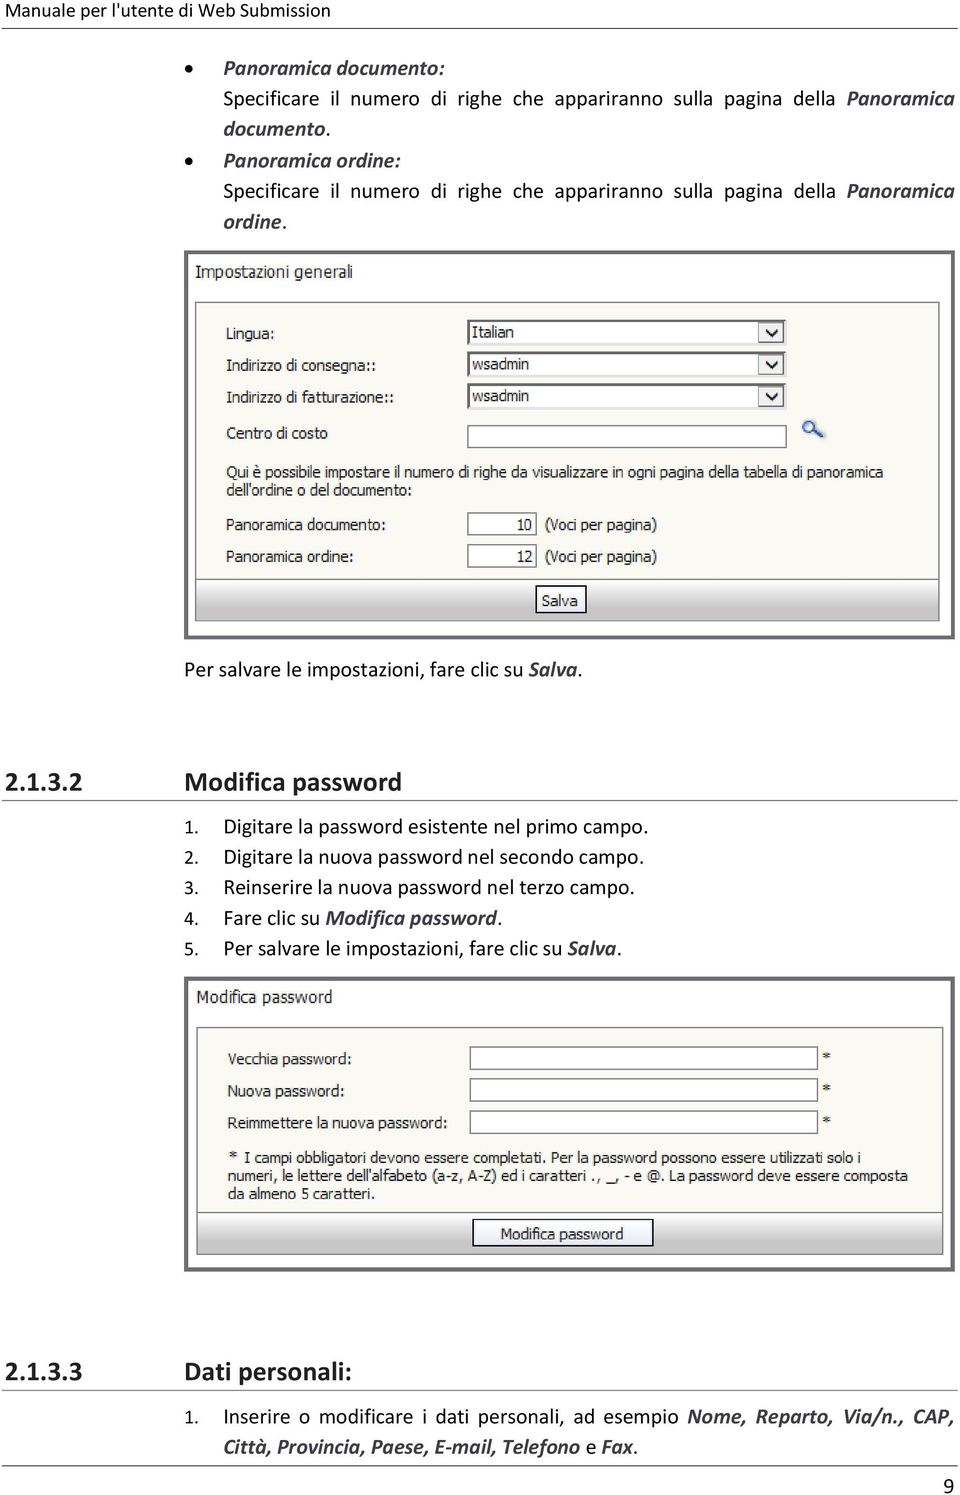 2 Modifica password 1. Digitare la password esistente nel primo campo. 2. Digitare la nuova password nel secondo campo. 3. Reinserire la nuova password nel terzo campo. 4.